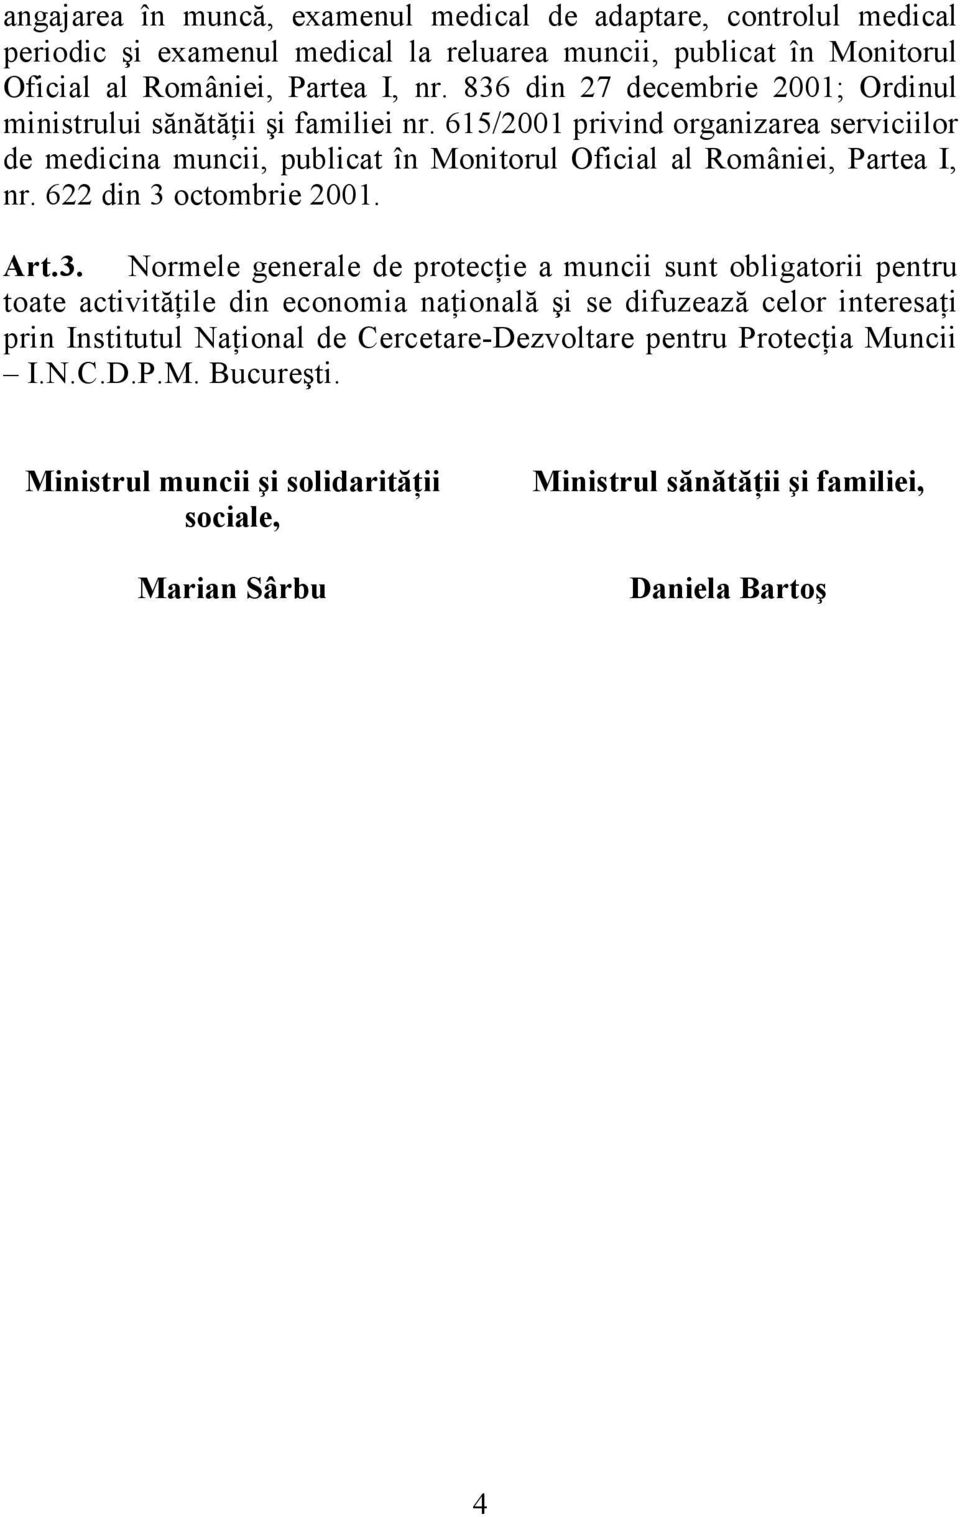 615/2001 privind organizarea serviciilor de medicina muncii, publicat în Monitorul Oficial al României, Partea I, nr. 622 din 3 